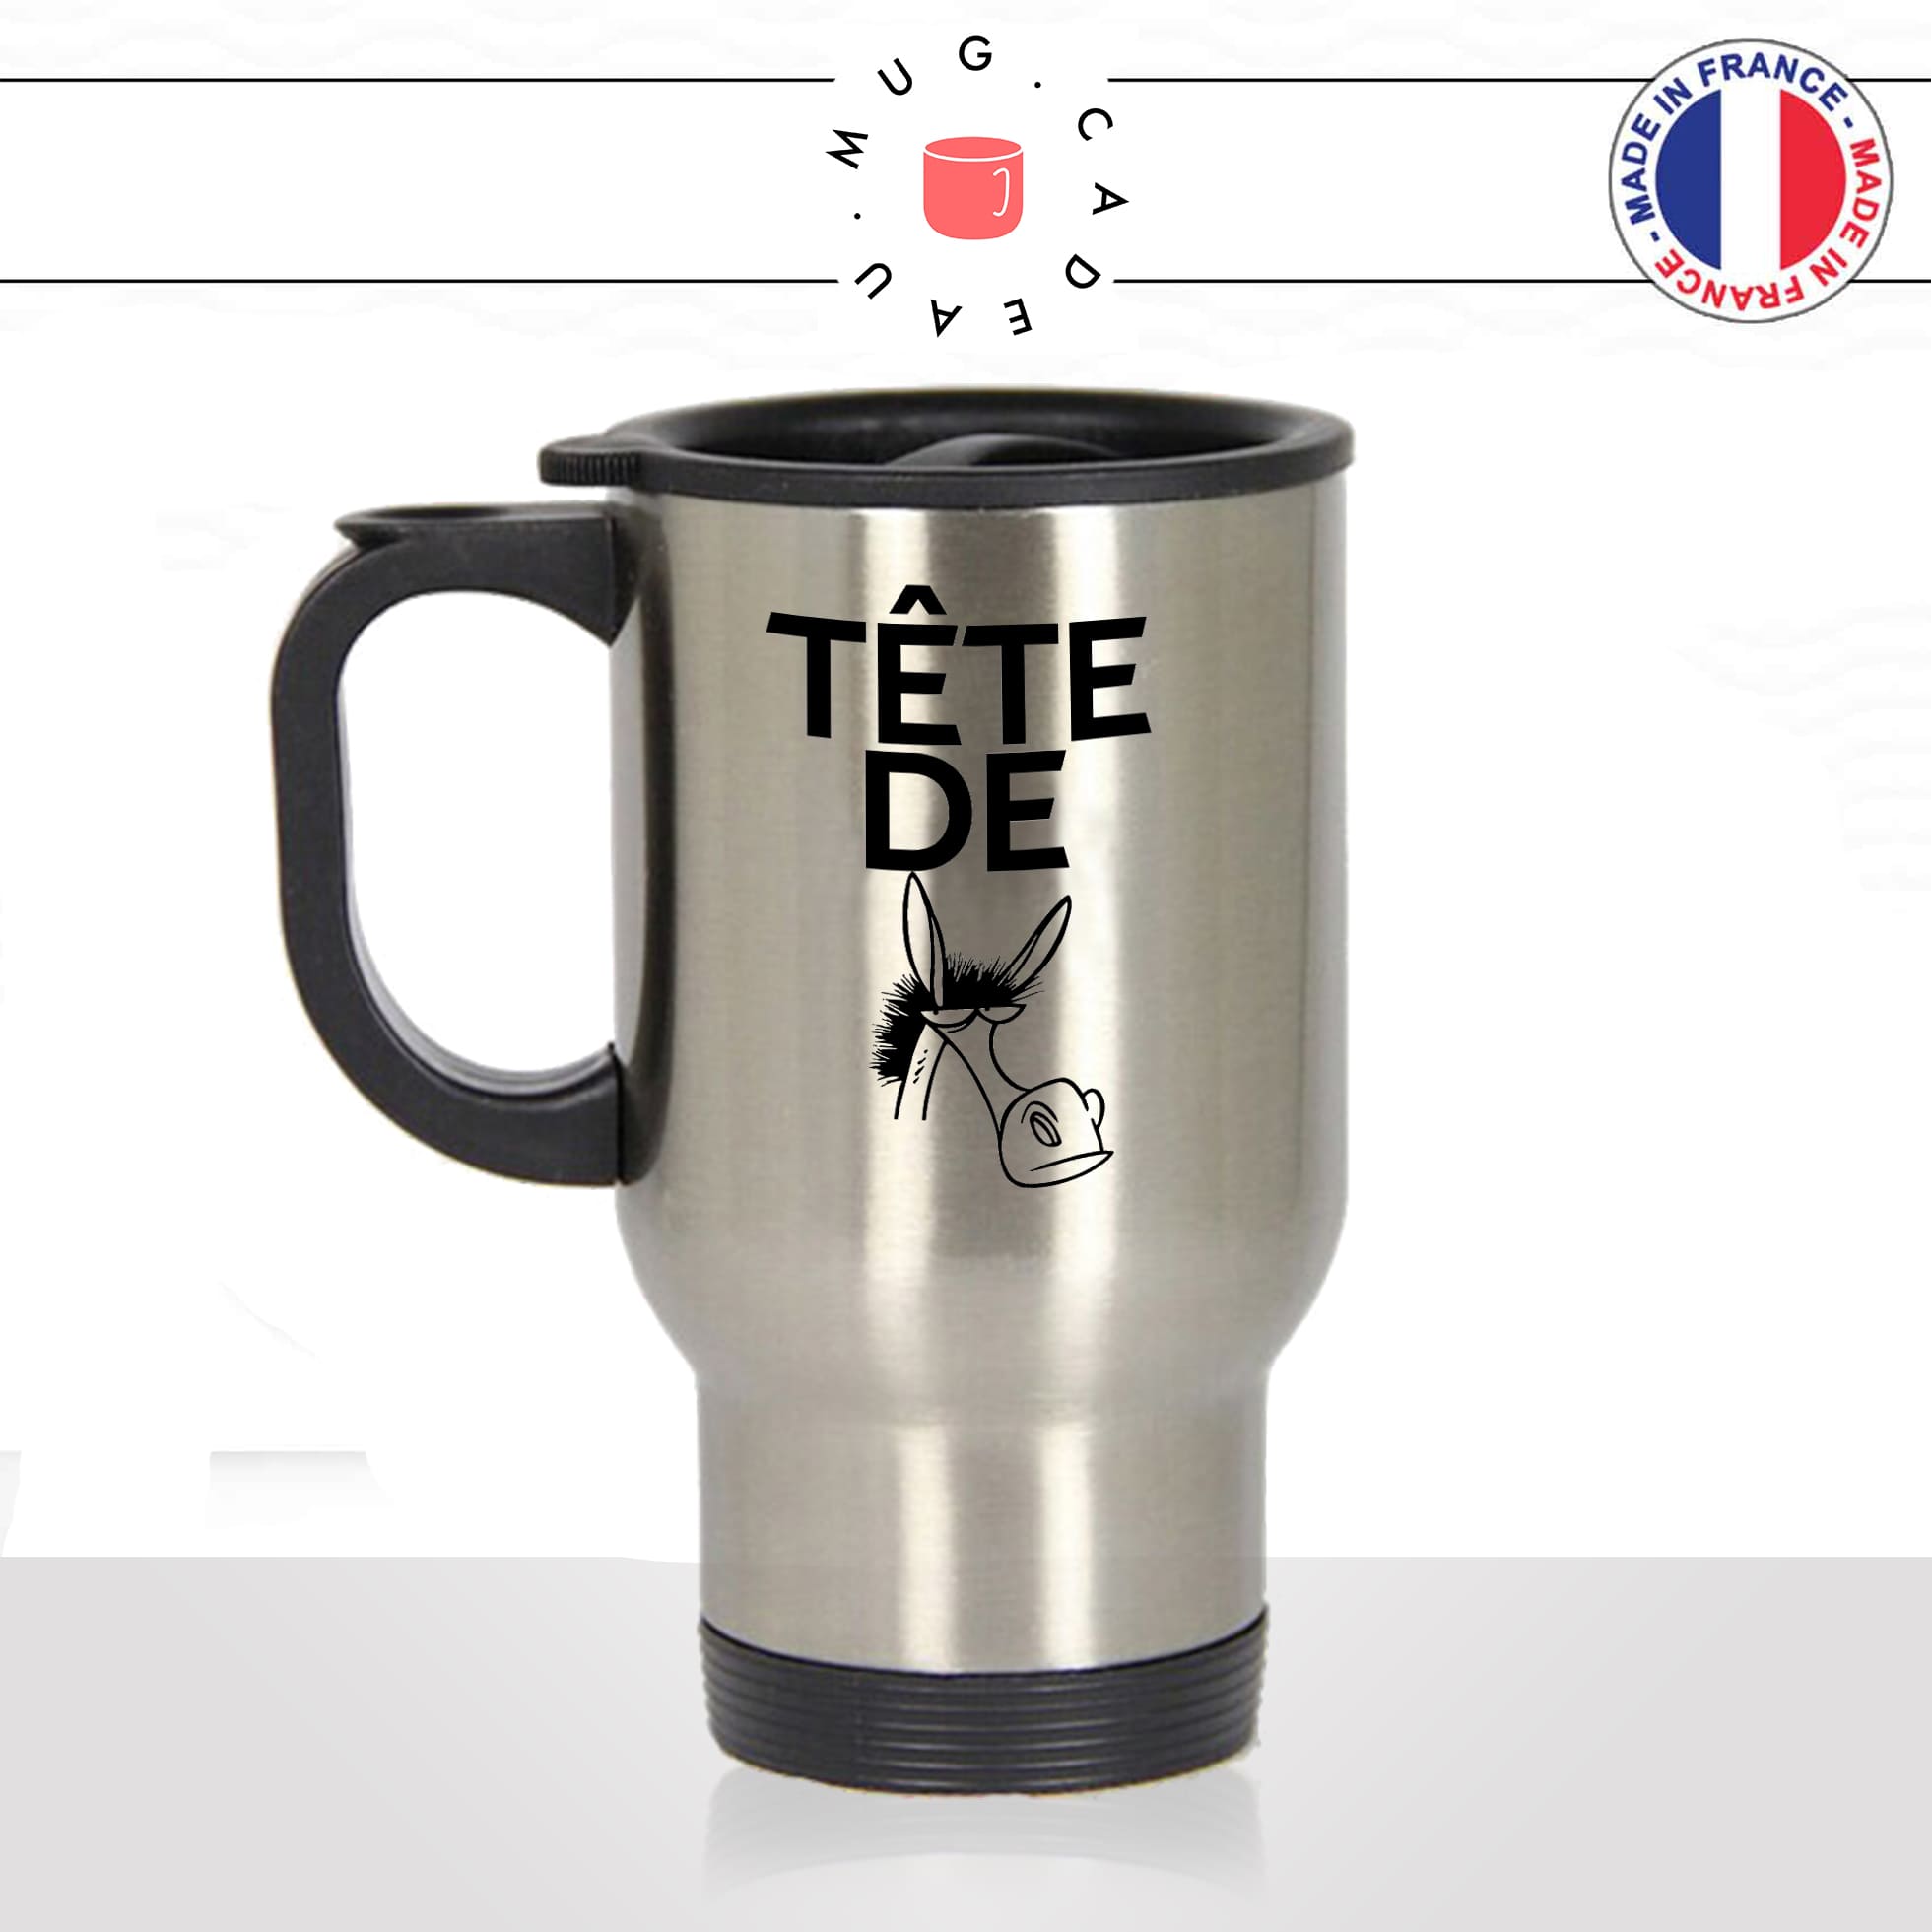 mug-tasse-thermos-isotherme-voyage-tete-de-mule-drole-expression-francaise-borné-homme-femme-humour-fun-idée-cadeau-originale-cool